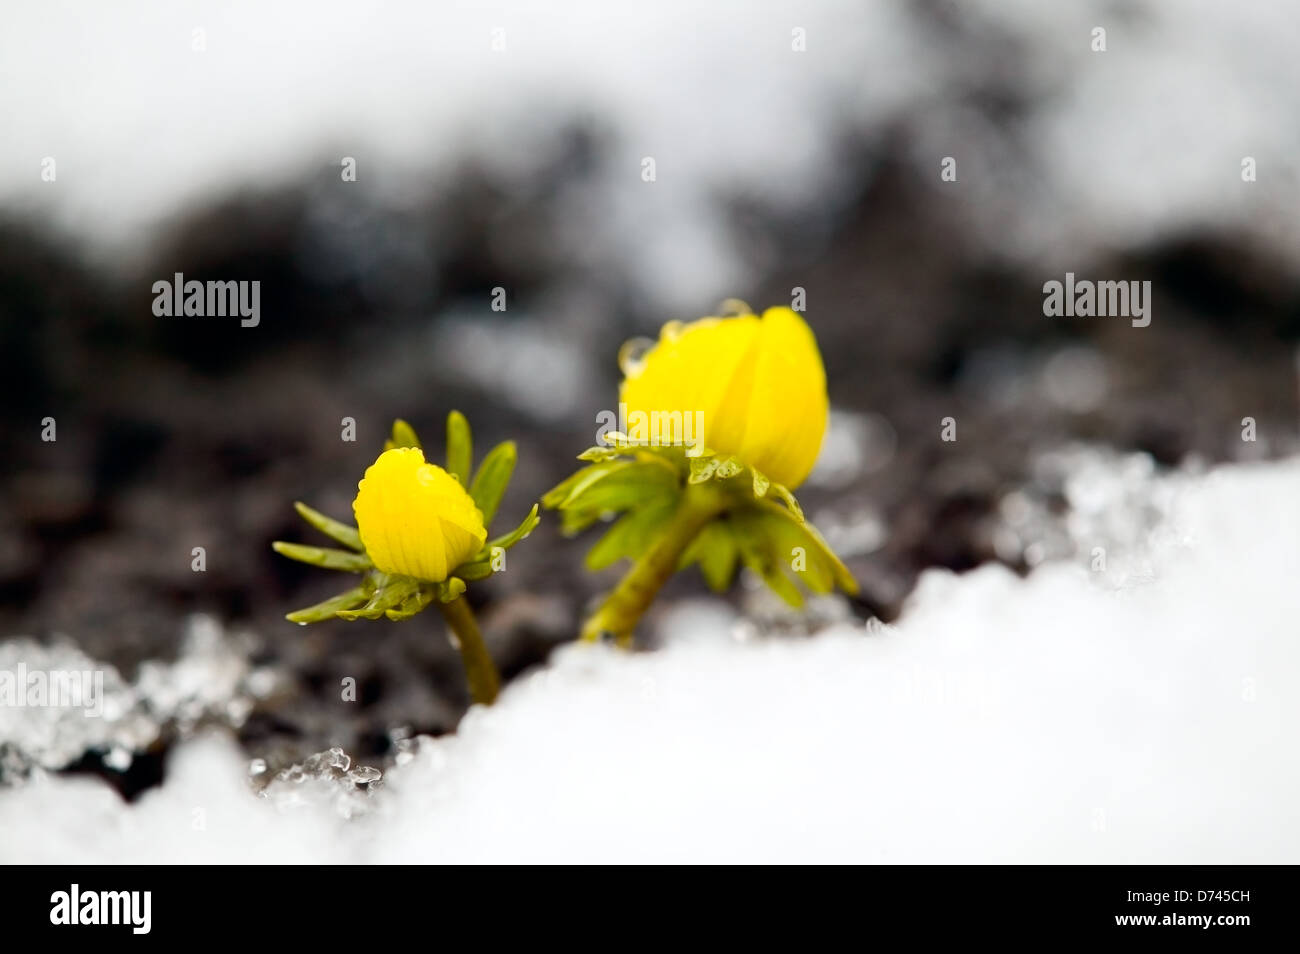 Yellow flower on soil, snow around, spring concept Stock Photo